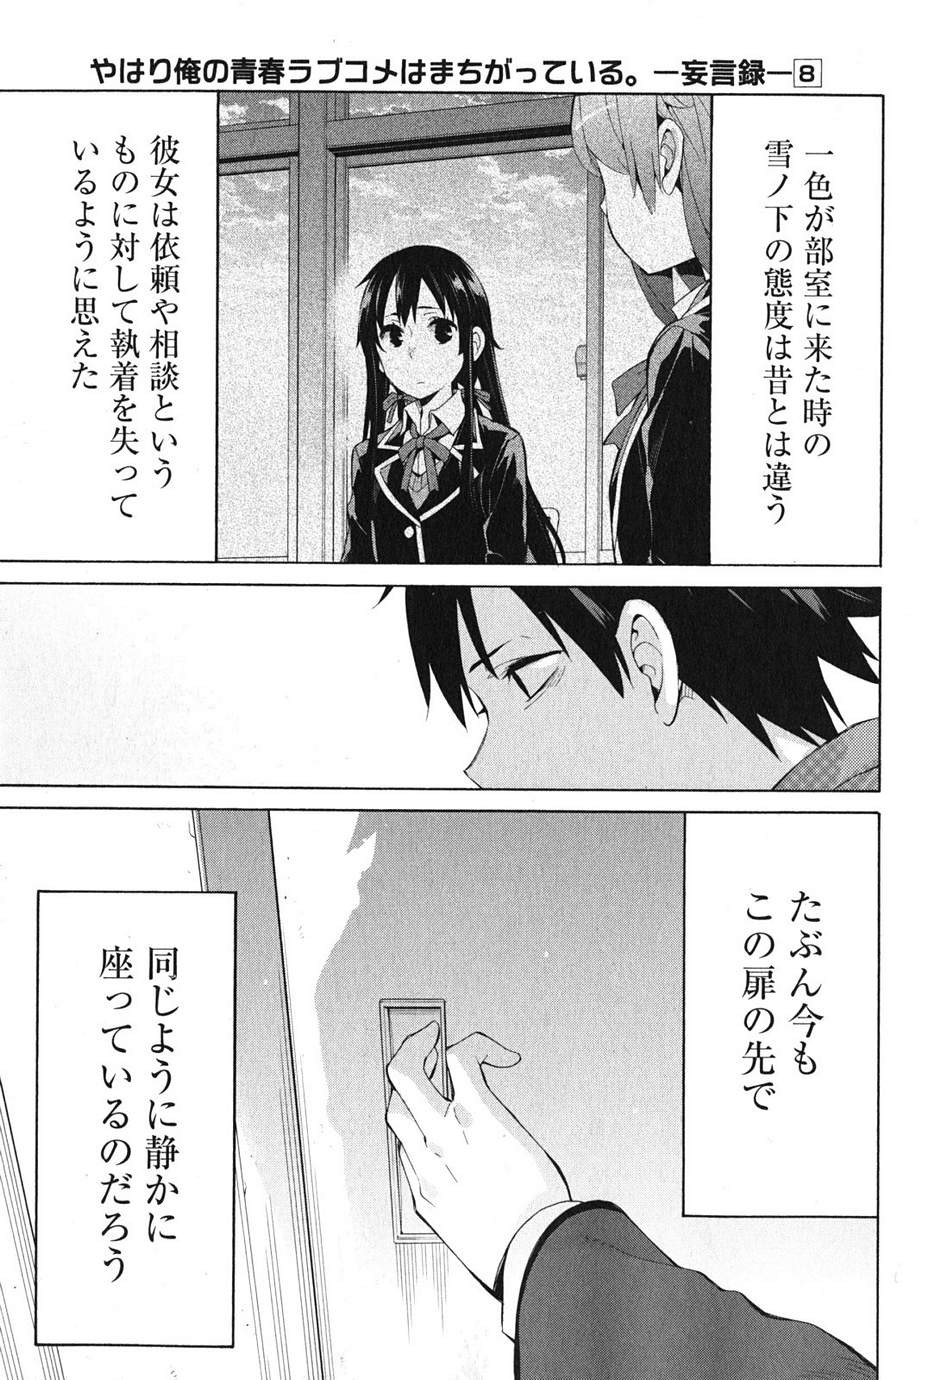 Yahari Ore no Seishun Rabukome wa Machigatte Iru. - Monologue - Chapter 36 - Page 43